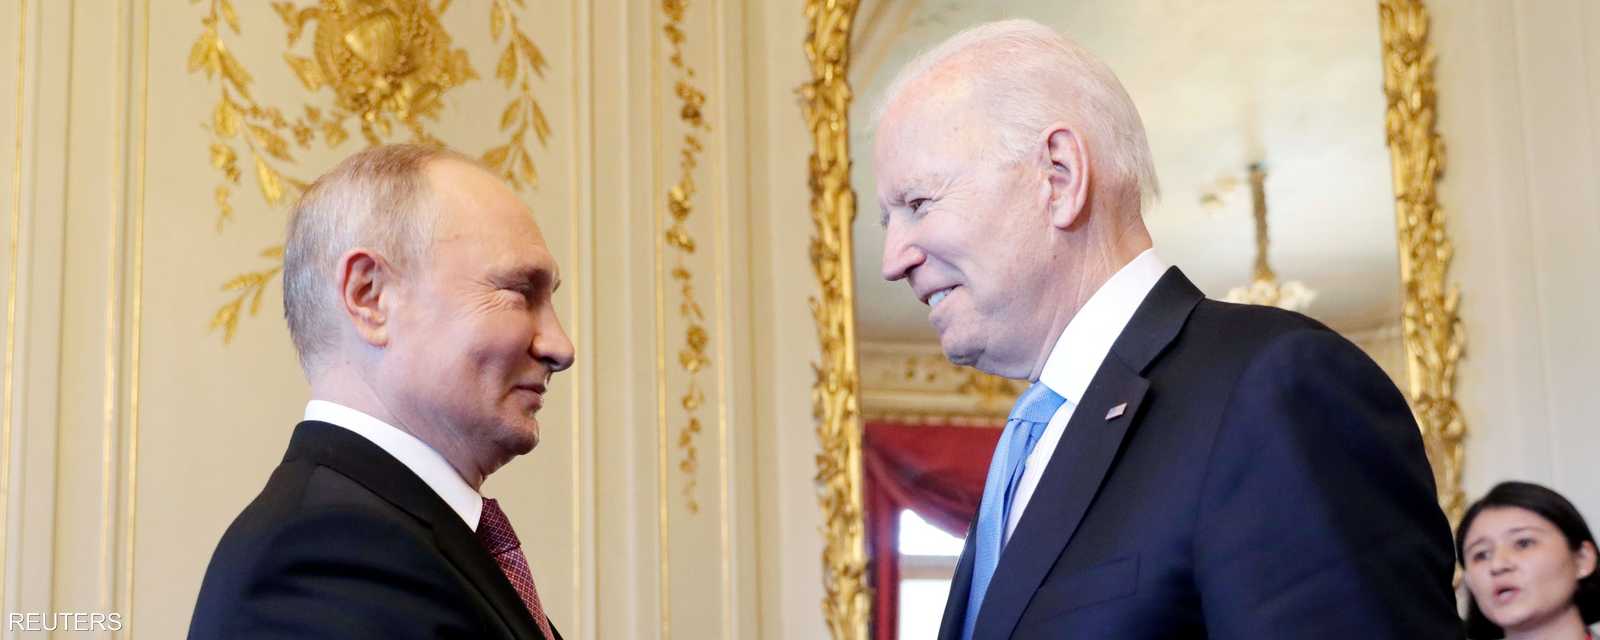 بوتن وبايدن داخل مقر القمة بينهما